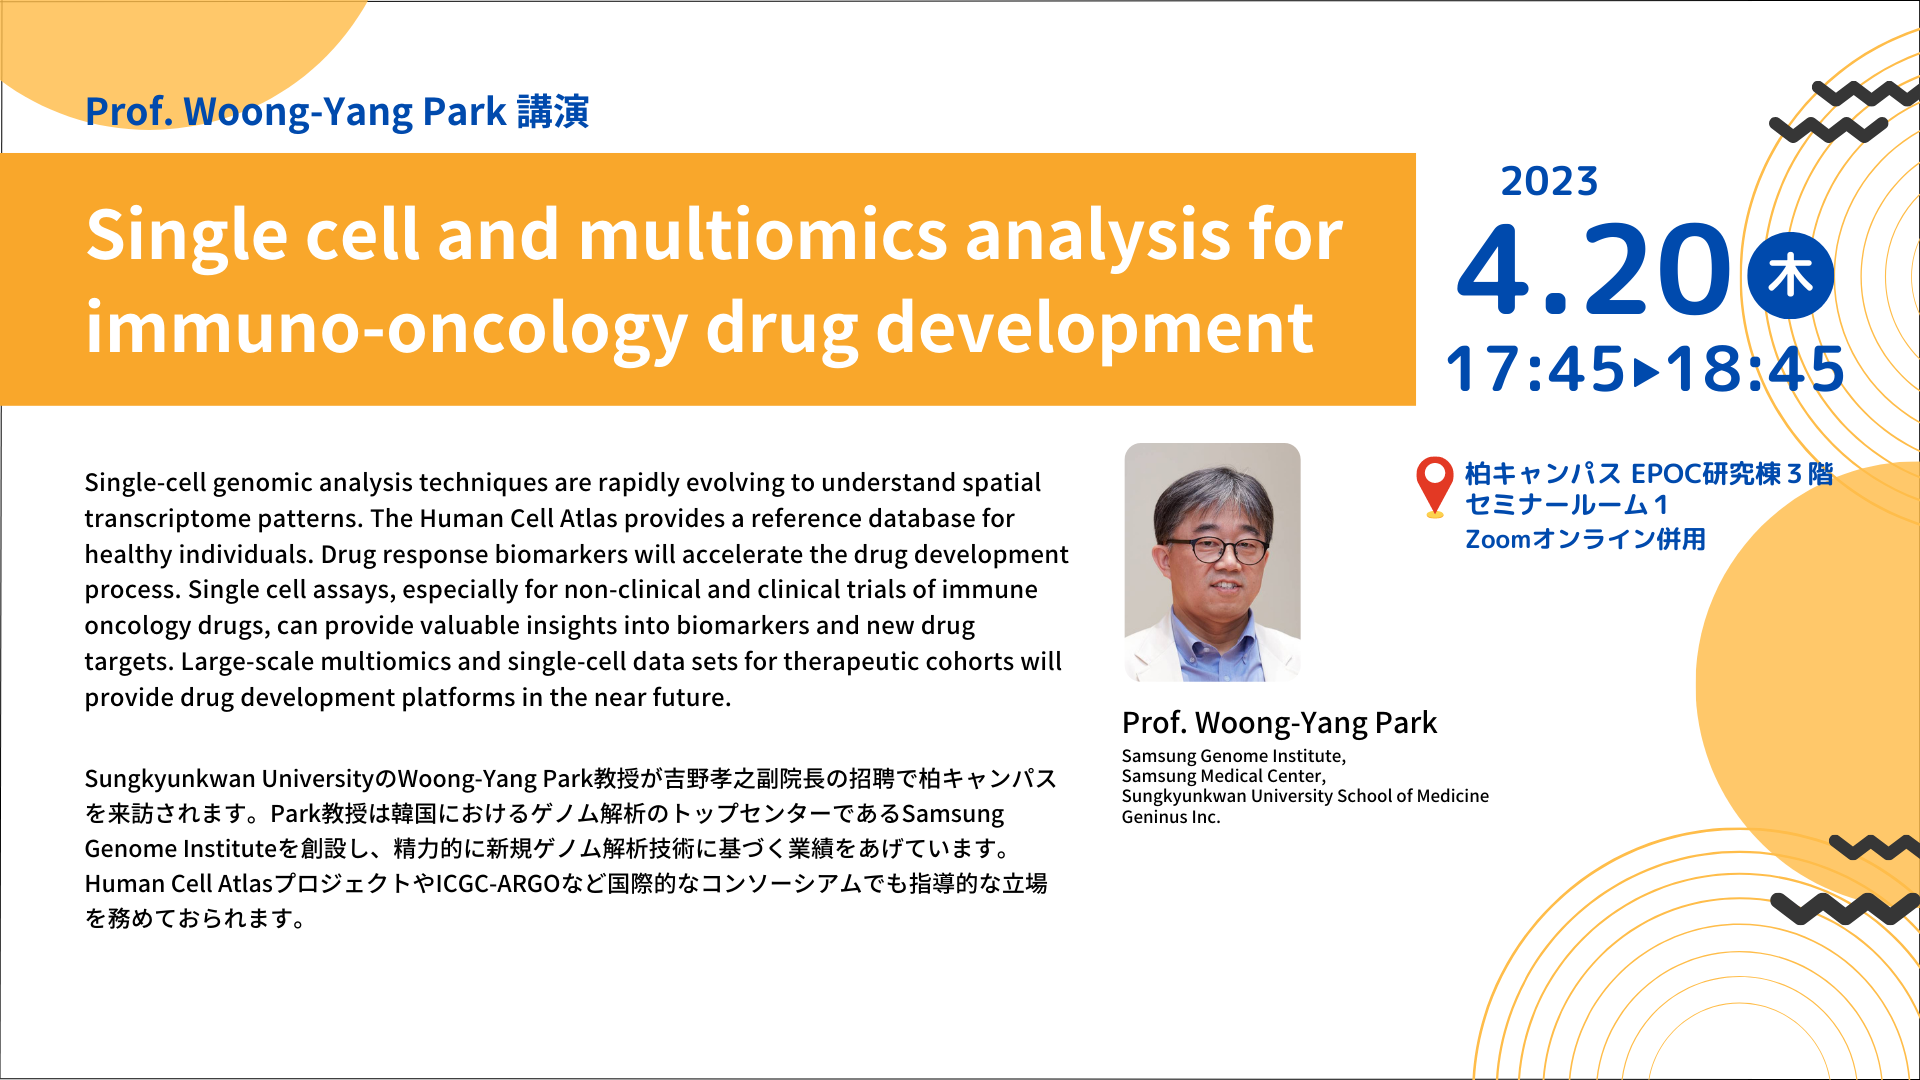 海外トピックスセミナー「Single cell and multiomics analysis for immuno-oncology drug development」開催